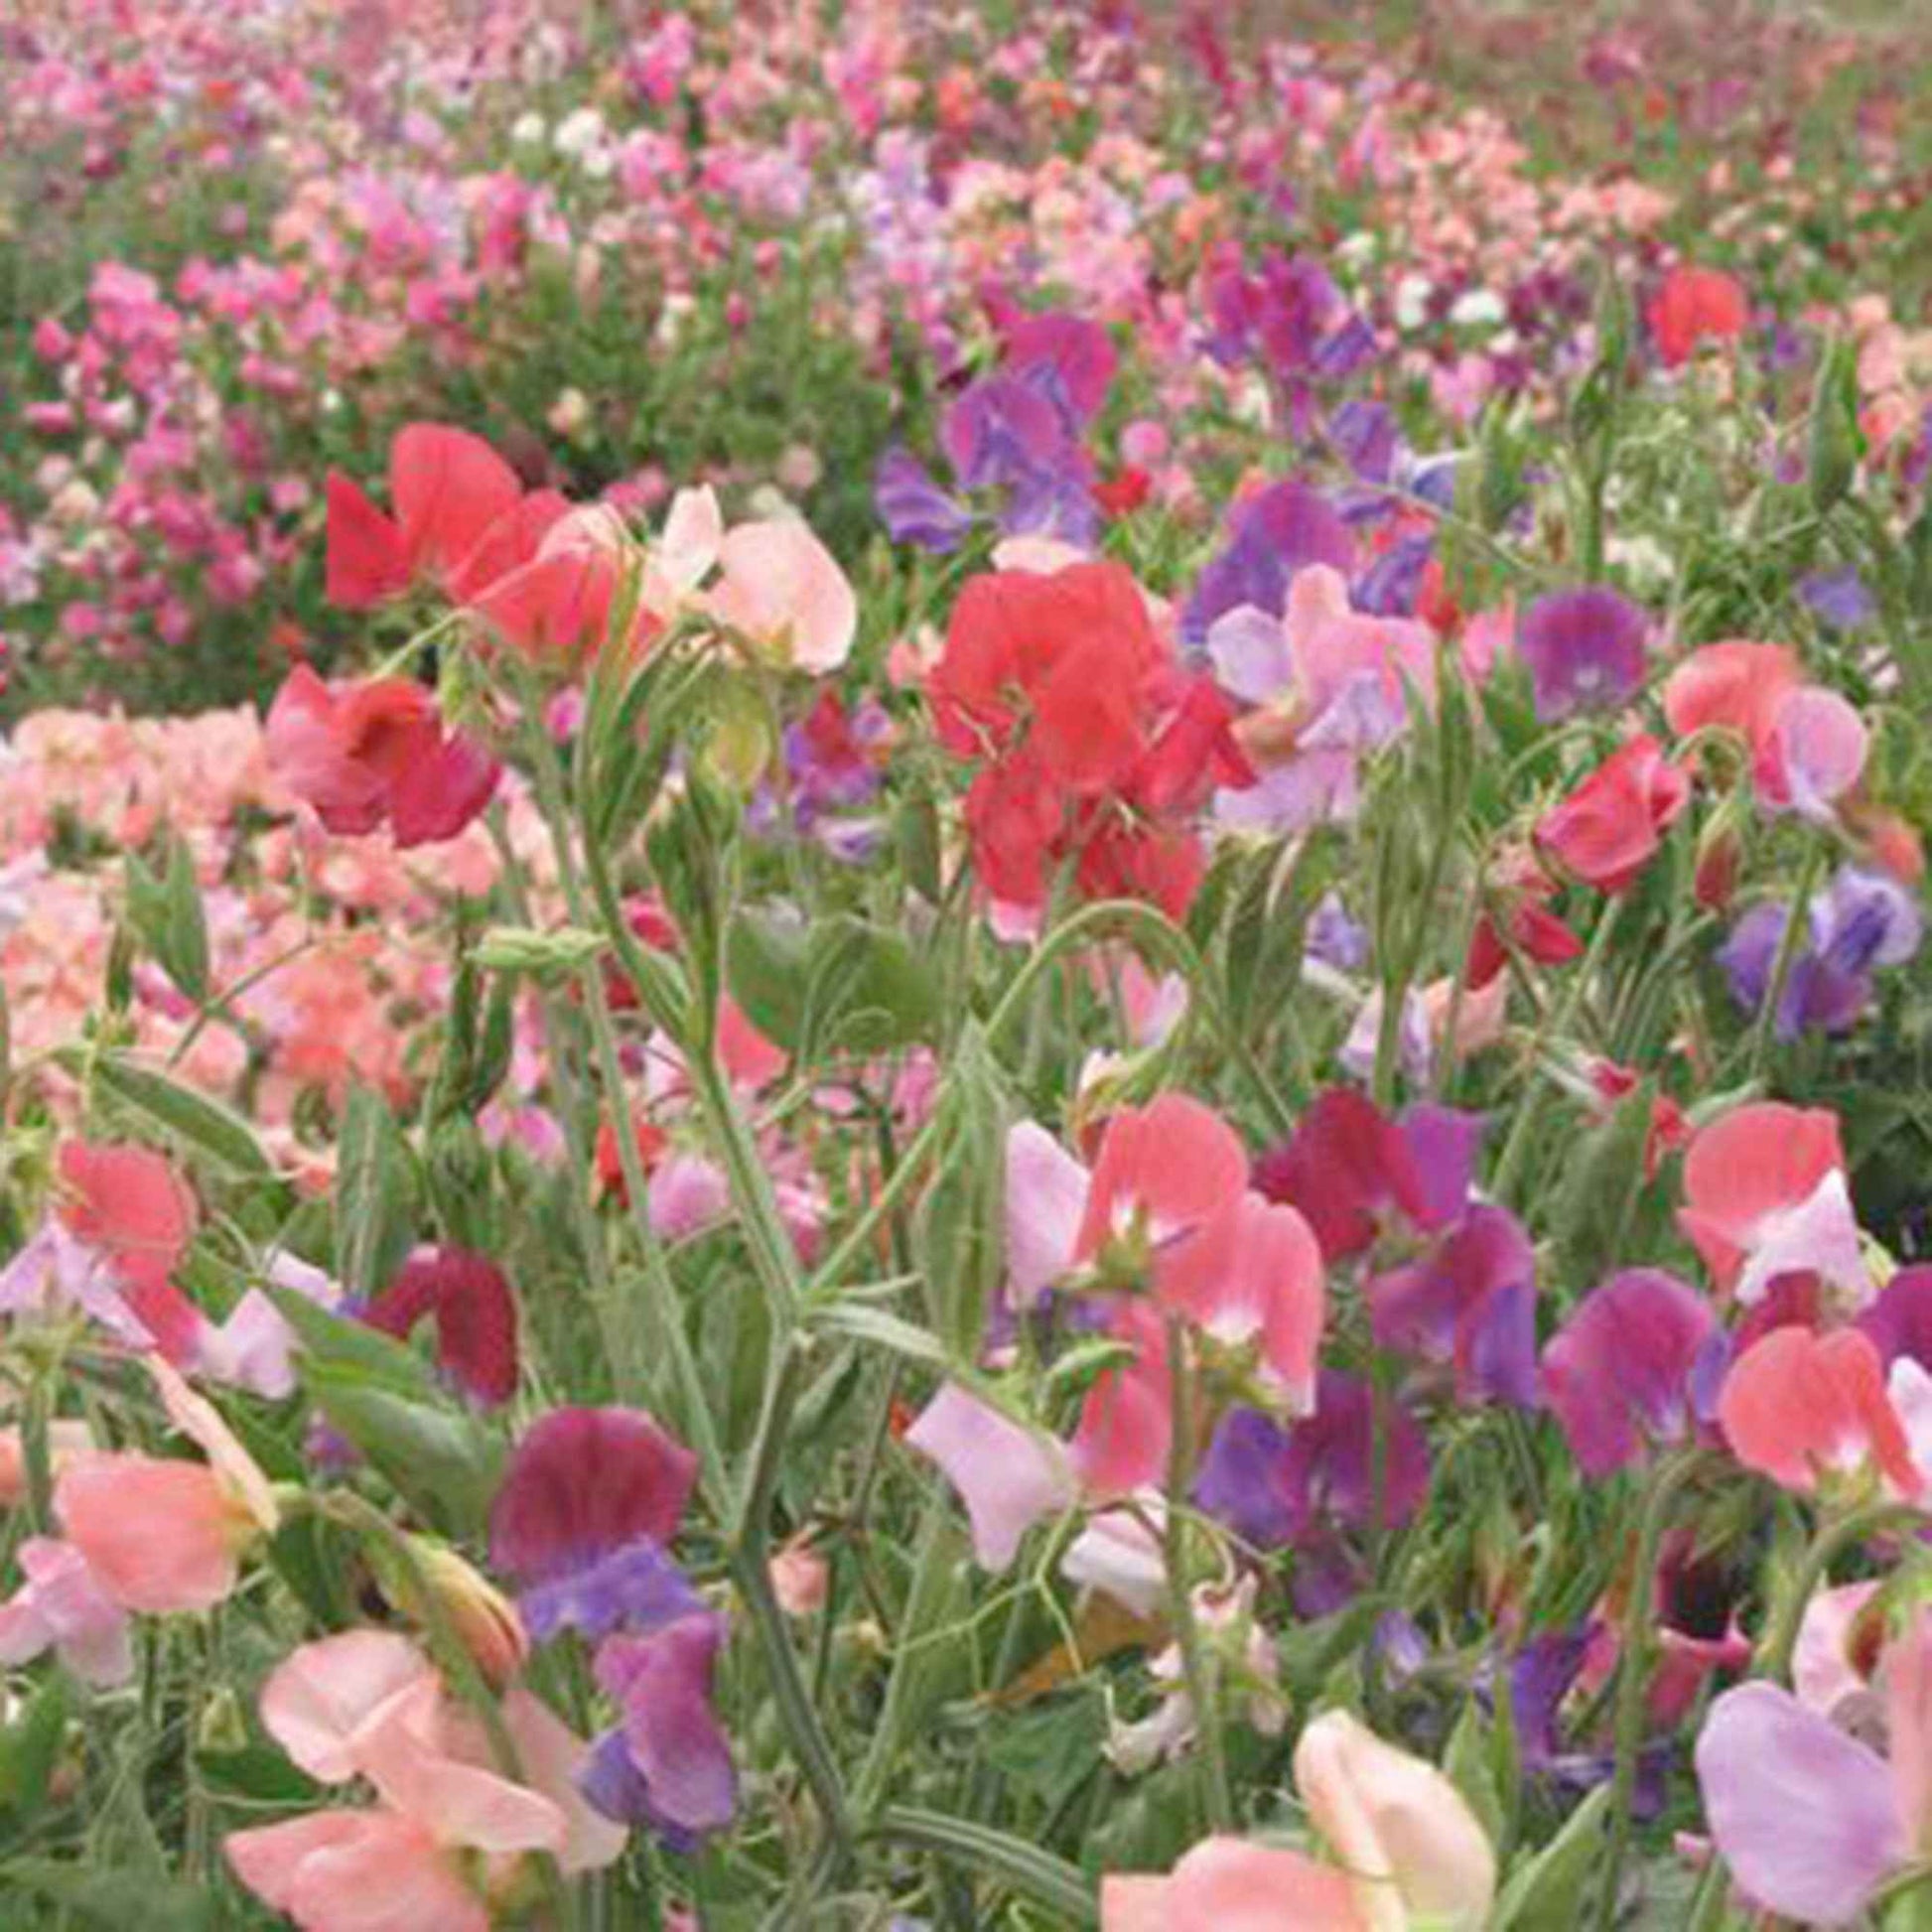 Pois de senteur Lathyrus 'Old Spice' - Biologique rouge-violet-blanc 2 m² - Semences de légumes - Jardin sauvage